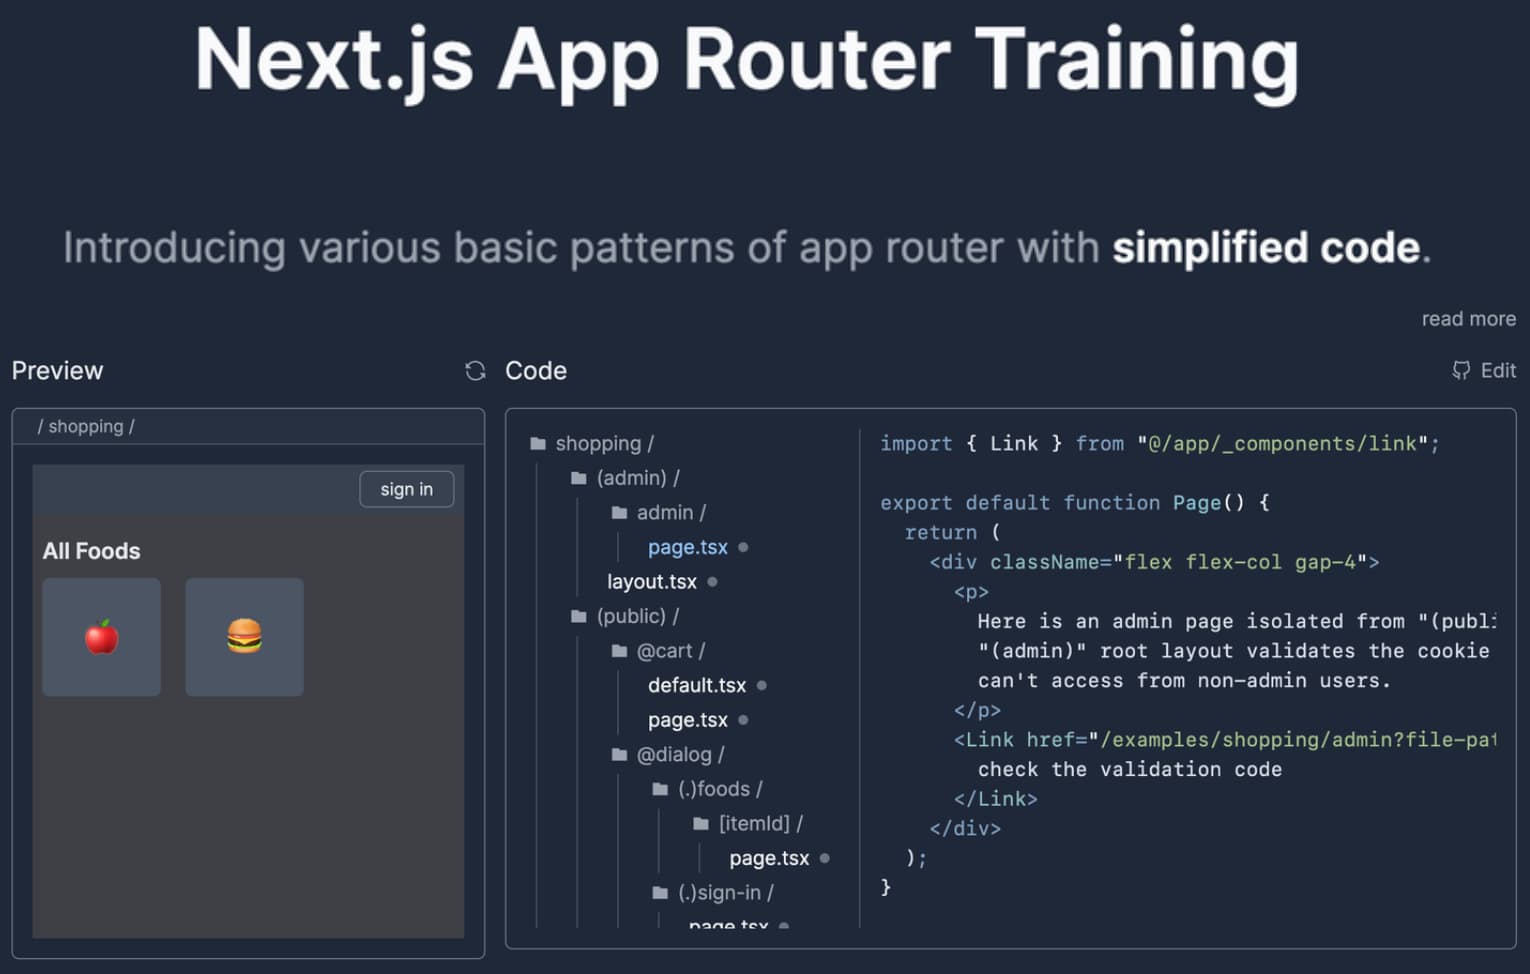 Next.js App Router Training